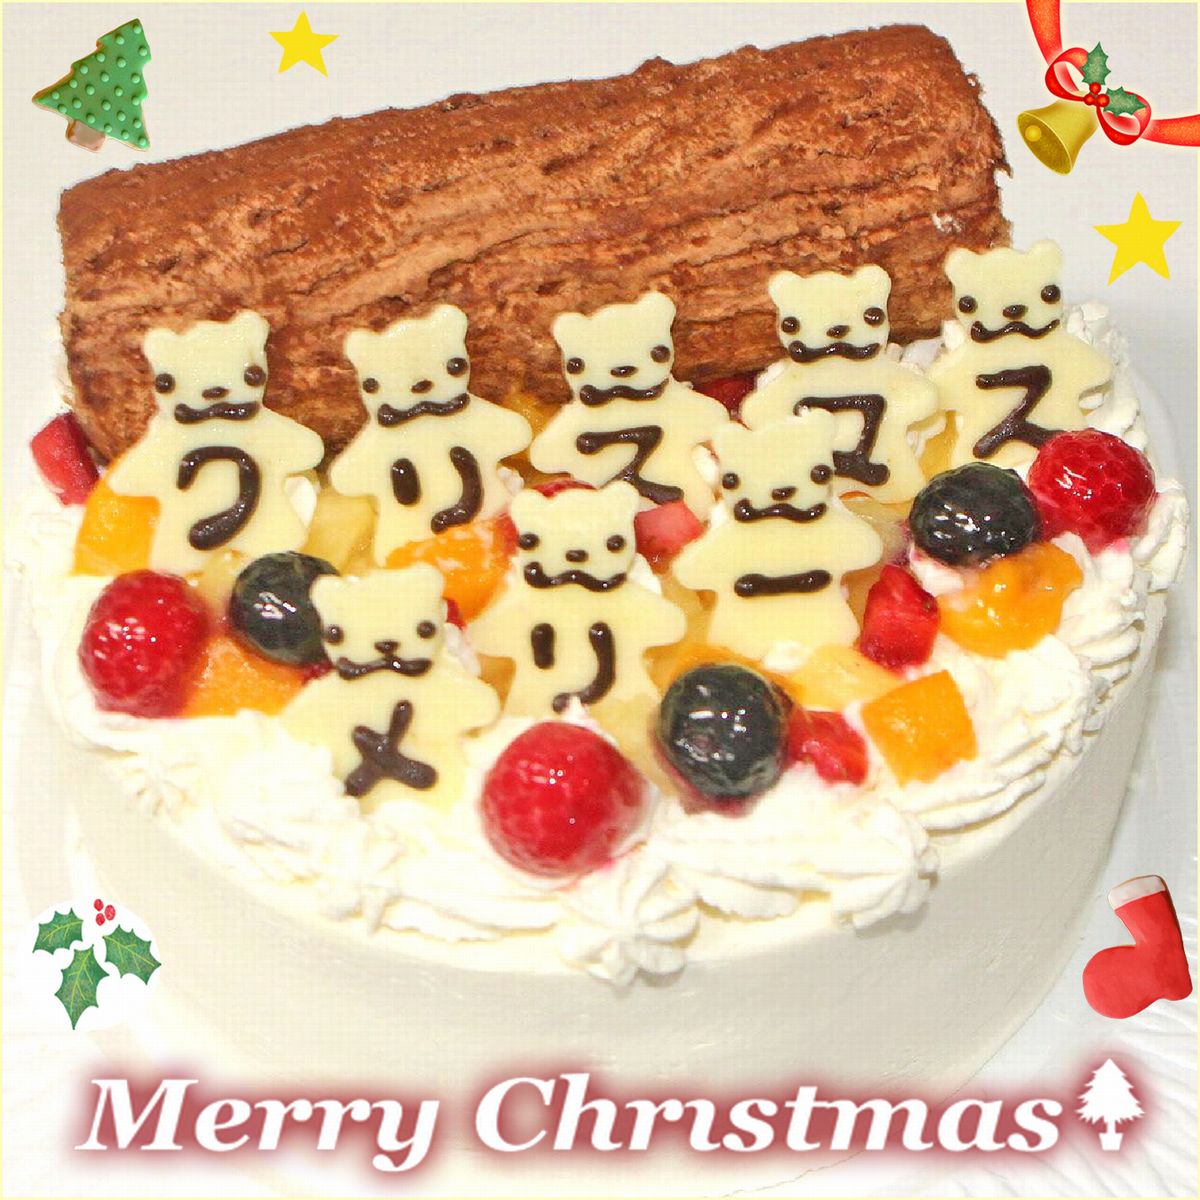 クリスマスケーキ こぐまたちのメリークリスマス6号 送料込み クリスマス人気 クリスマスデコレーションケーキ かわいいケーキ キャラクターケーキ 甘さ控えめ クリスマスパーティー Ocruyo オクルヨ